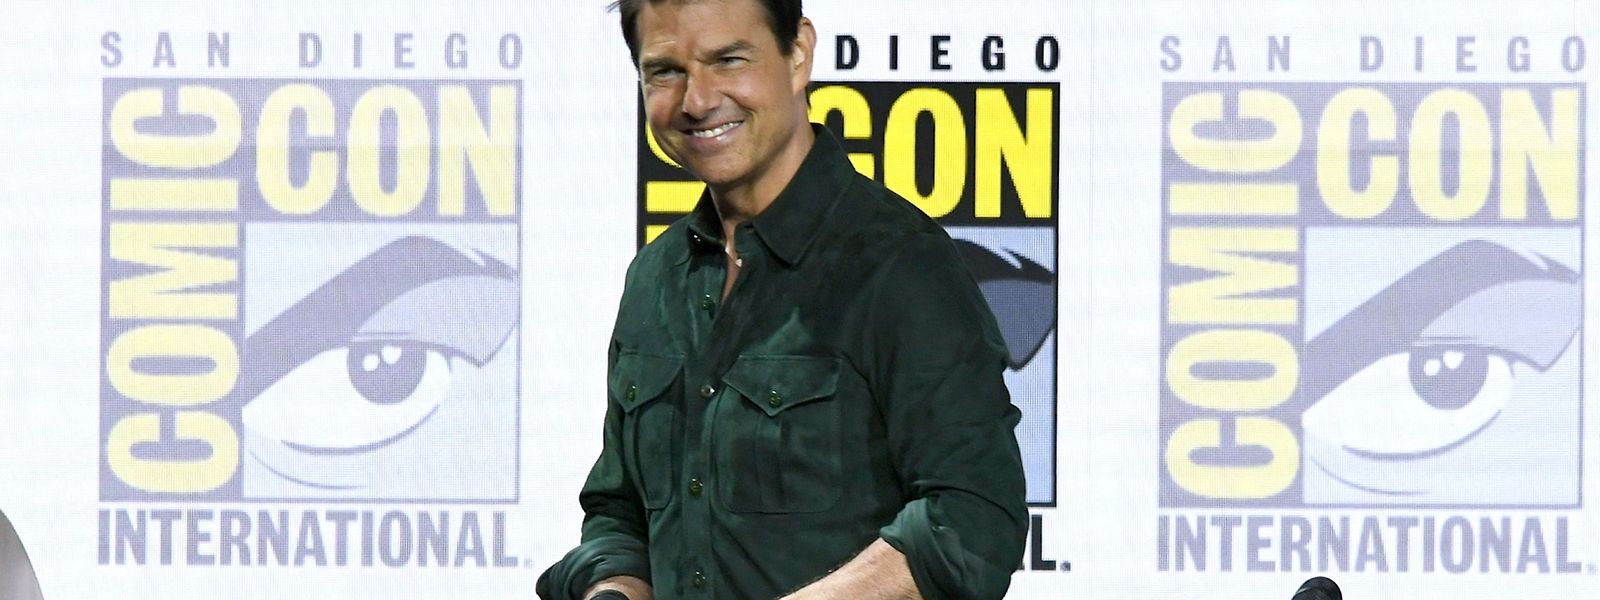 Tom Cruise stellte den Nachfolger des 1980er-Blockbusters "Top Gun" bei der Comic-Con persönlich vor.